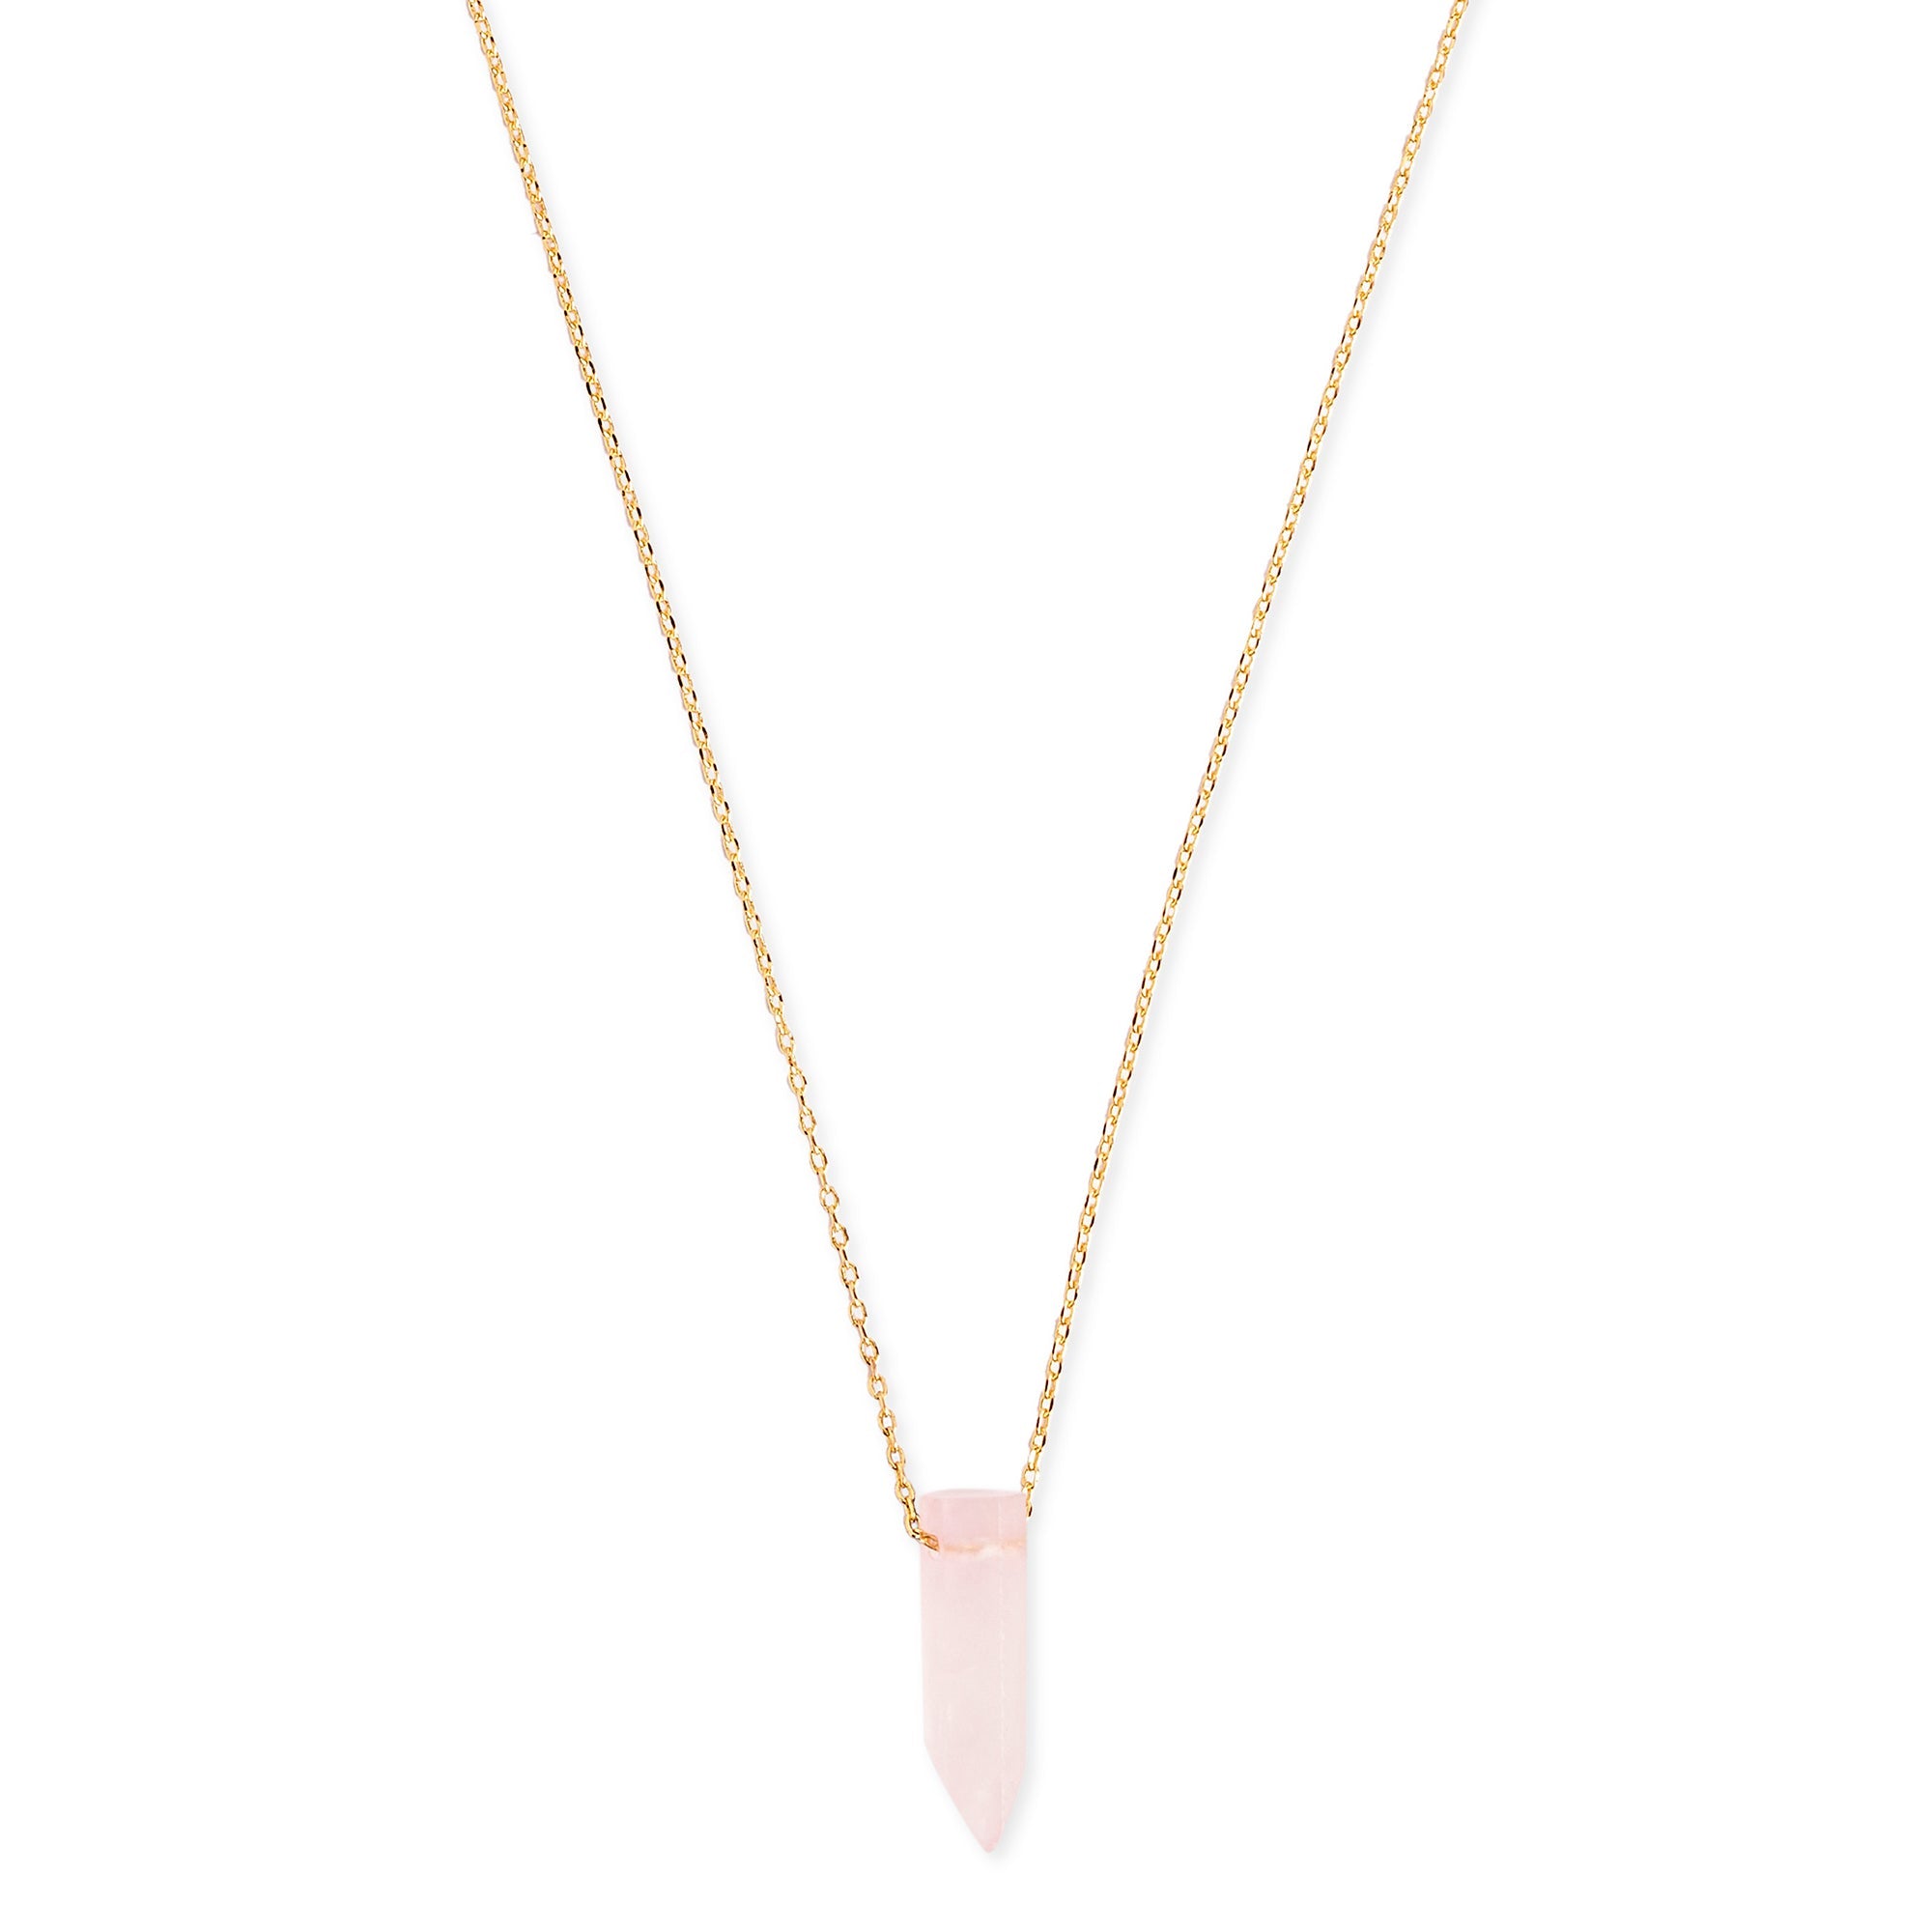 Rose Quartz Heart Pendant Necklace, Adjustable Crystal Necklace - Etsy | Rose  quartz heart, Heart pendant, Crystal necklace etsy